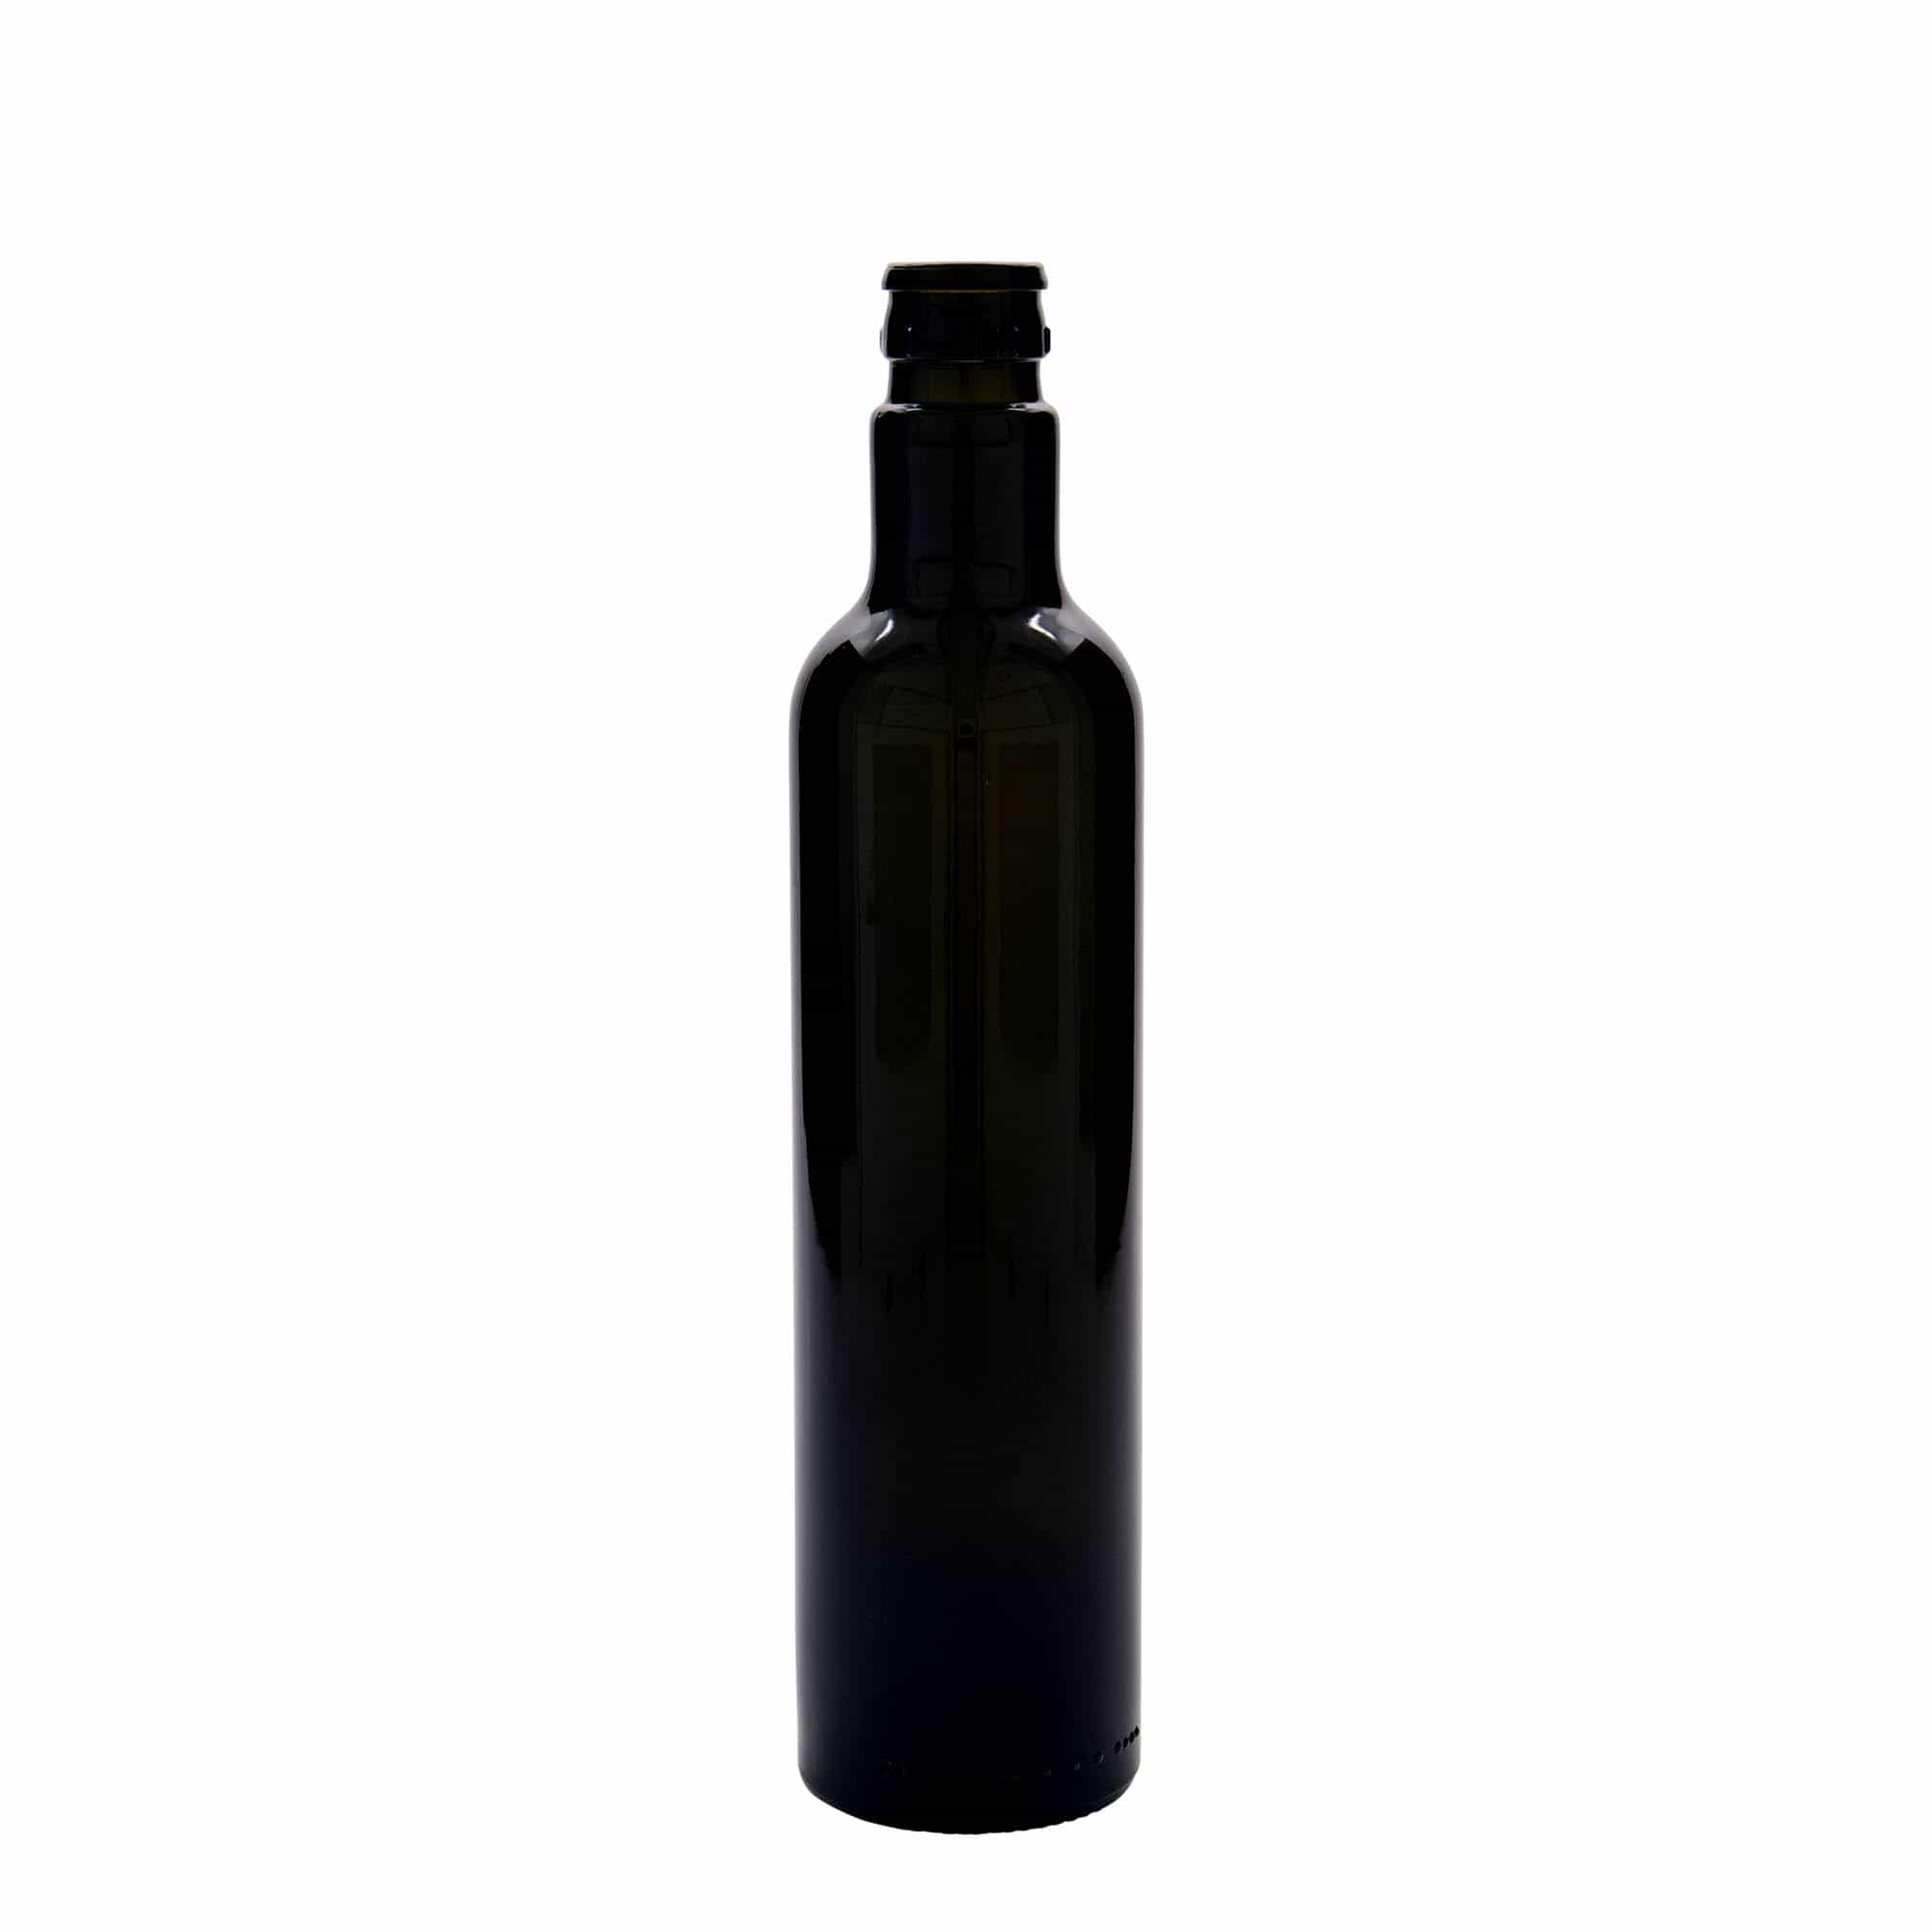 500 ml butelka na ocet/olej 'Willy New', szkło, kolor zielony antyczny, zamknięcie: DOP